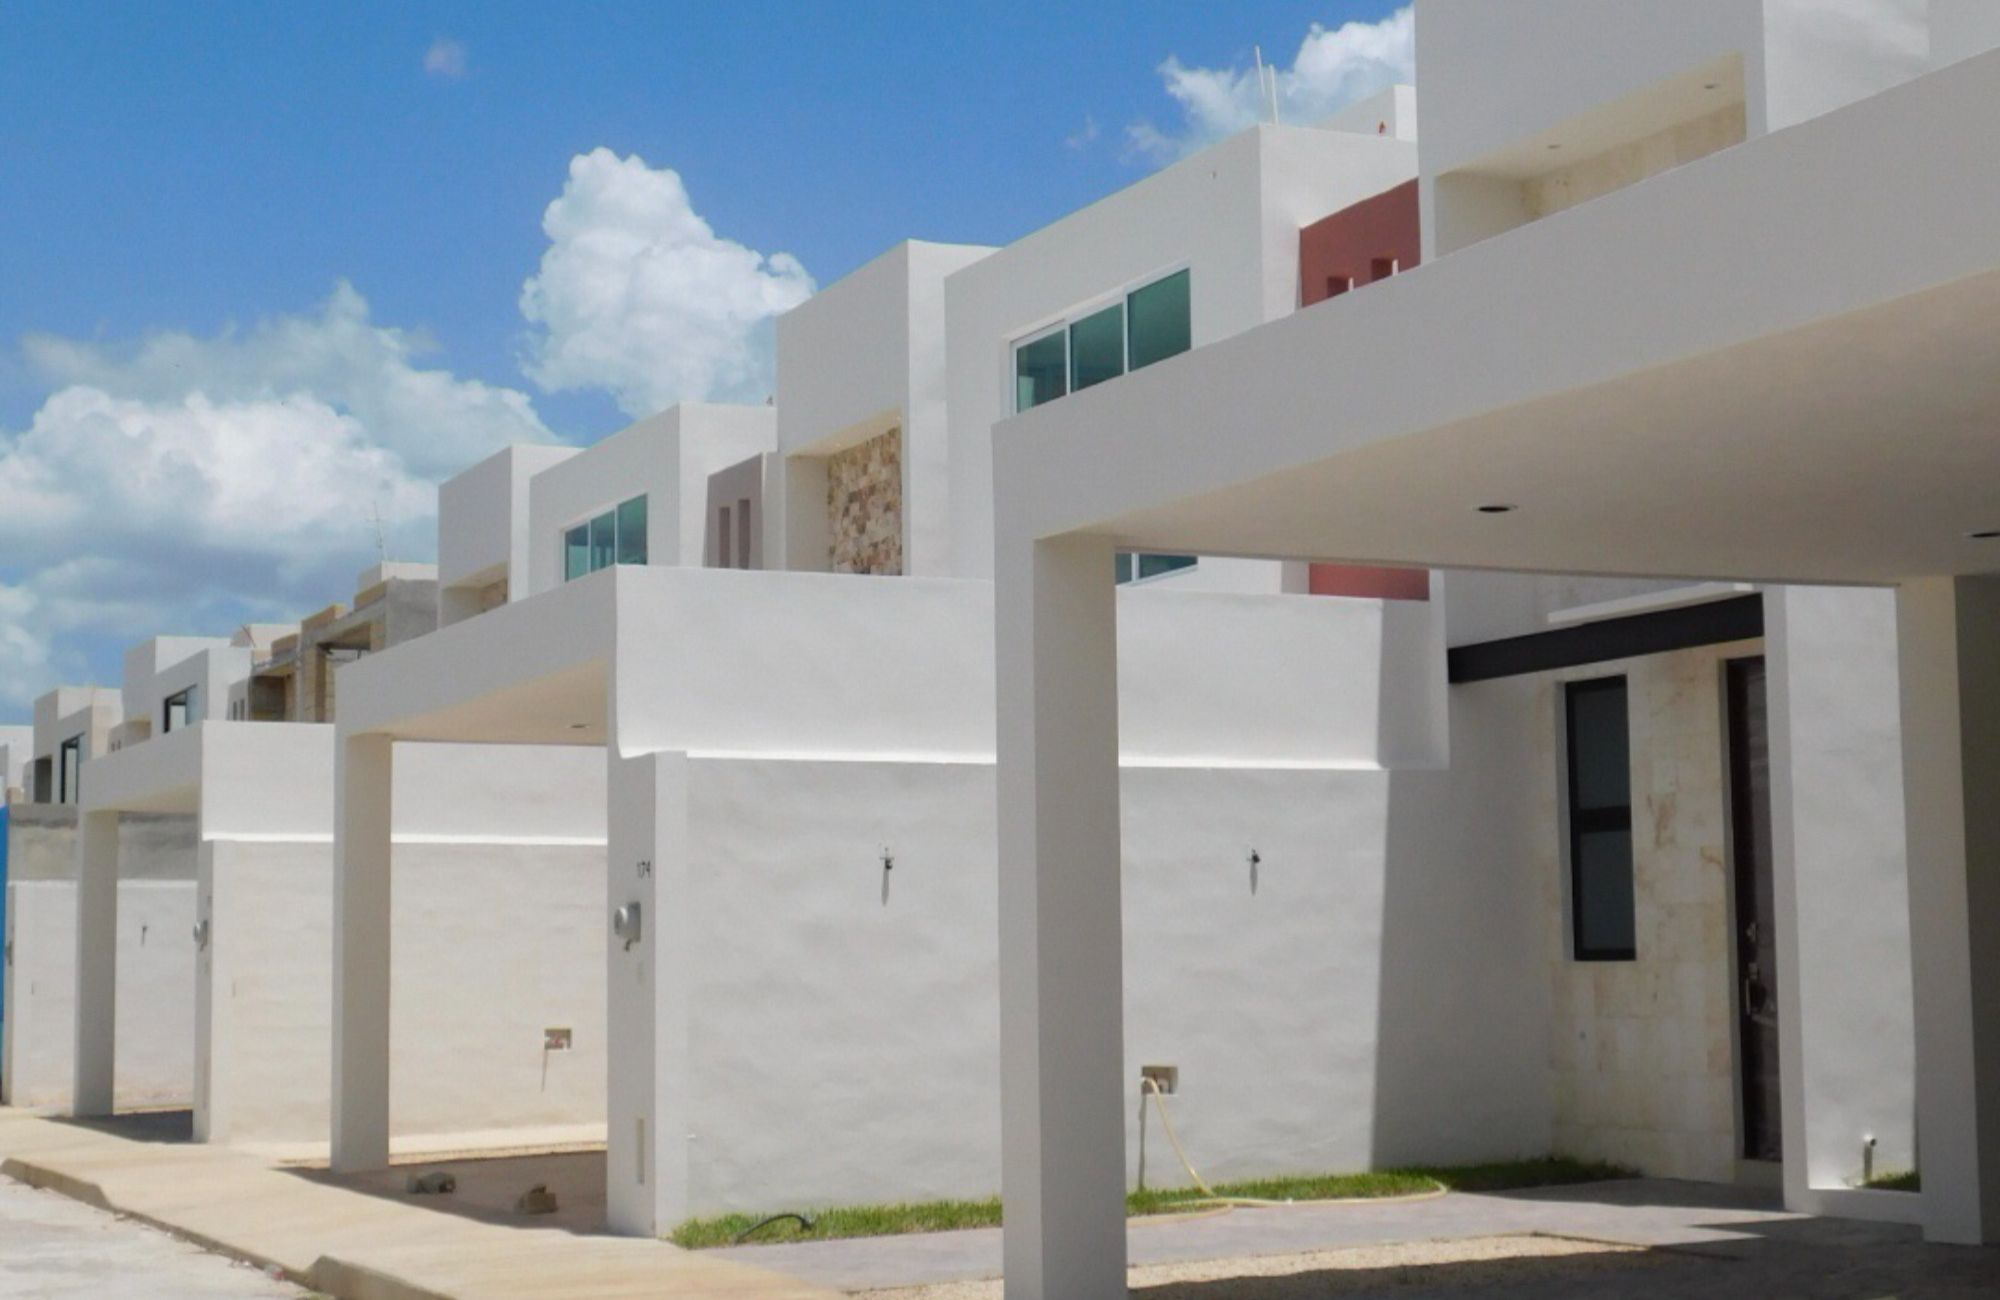 Residencia con jardín, alberca privada y casa club, Zona Norte venta, Merida.